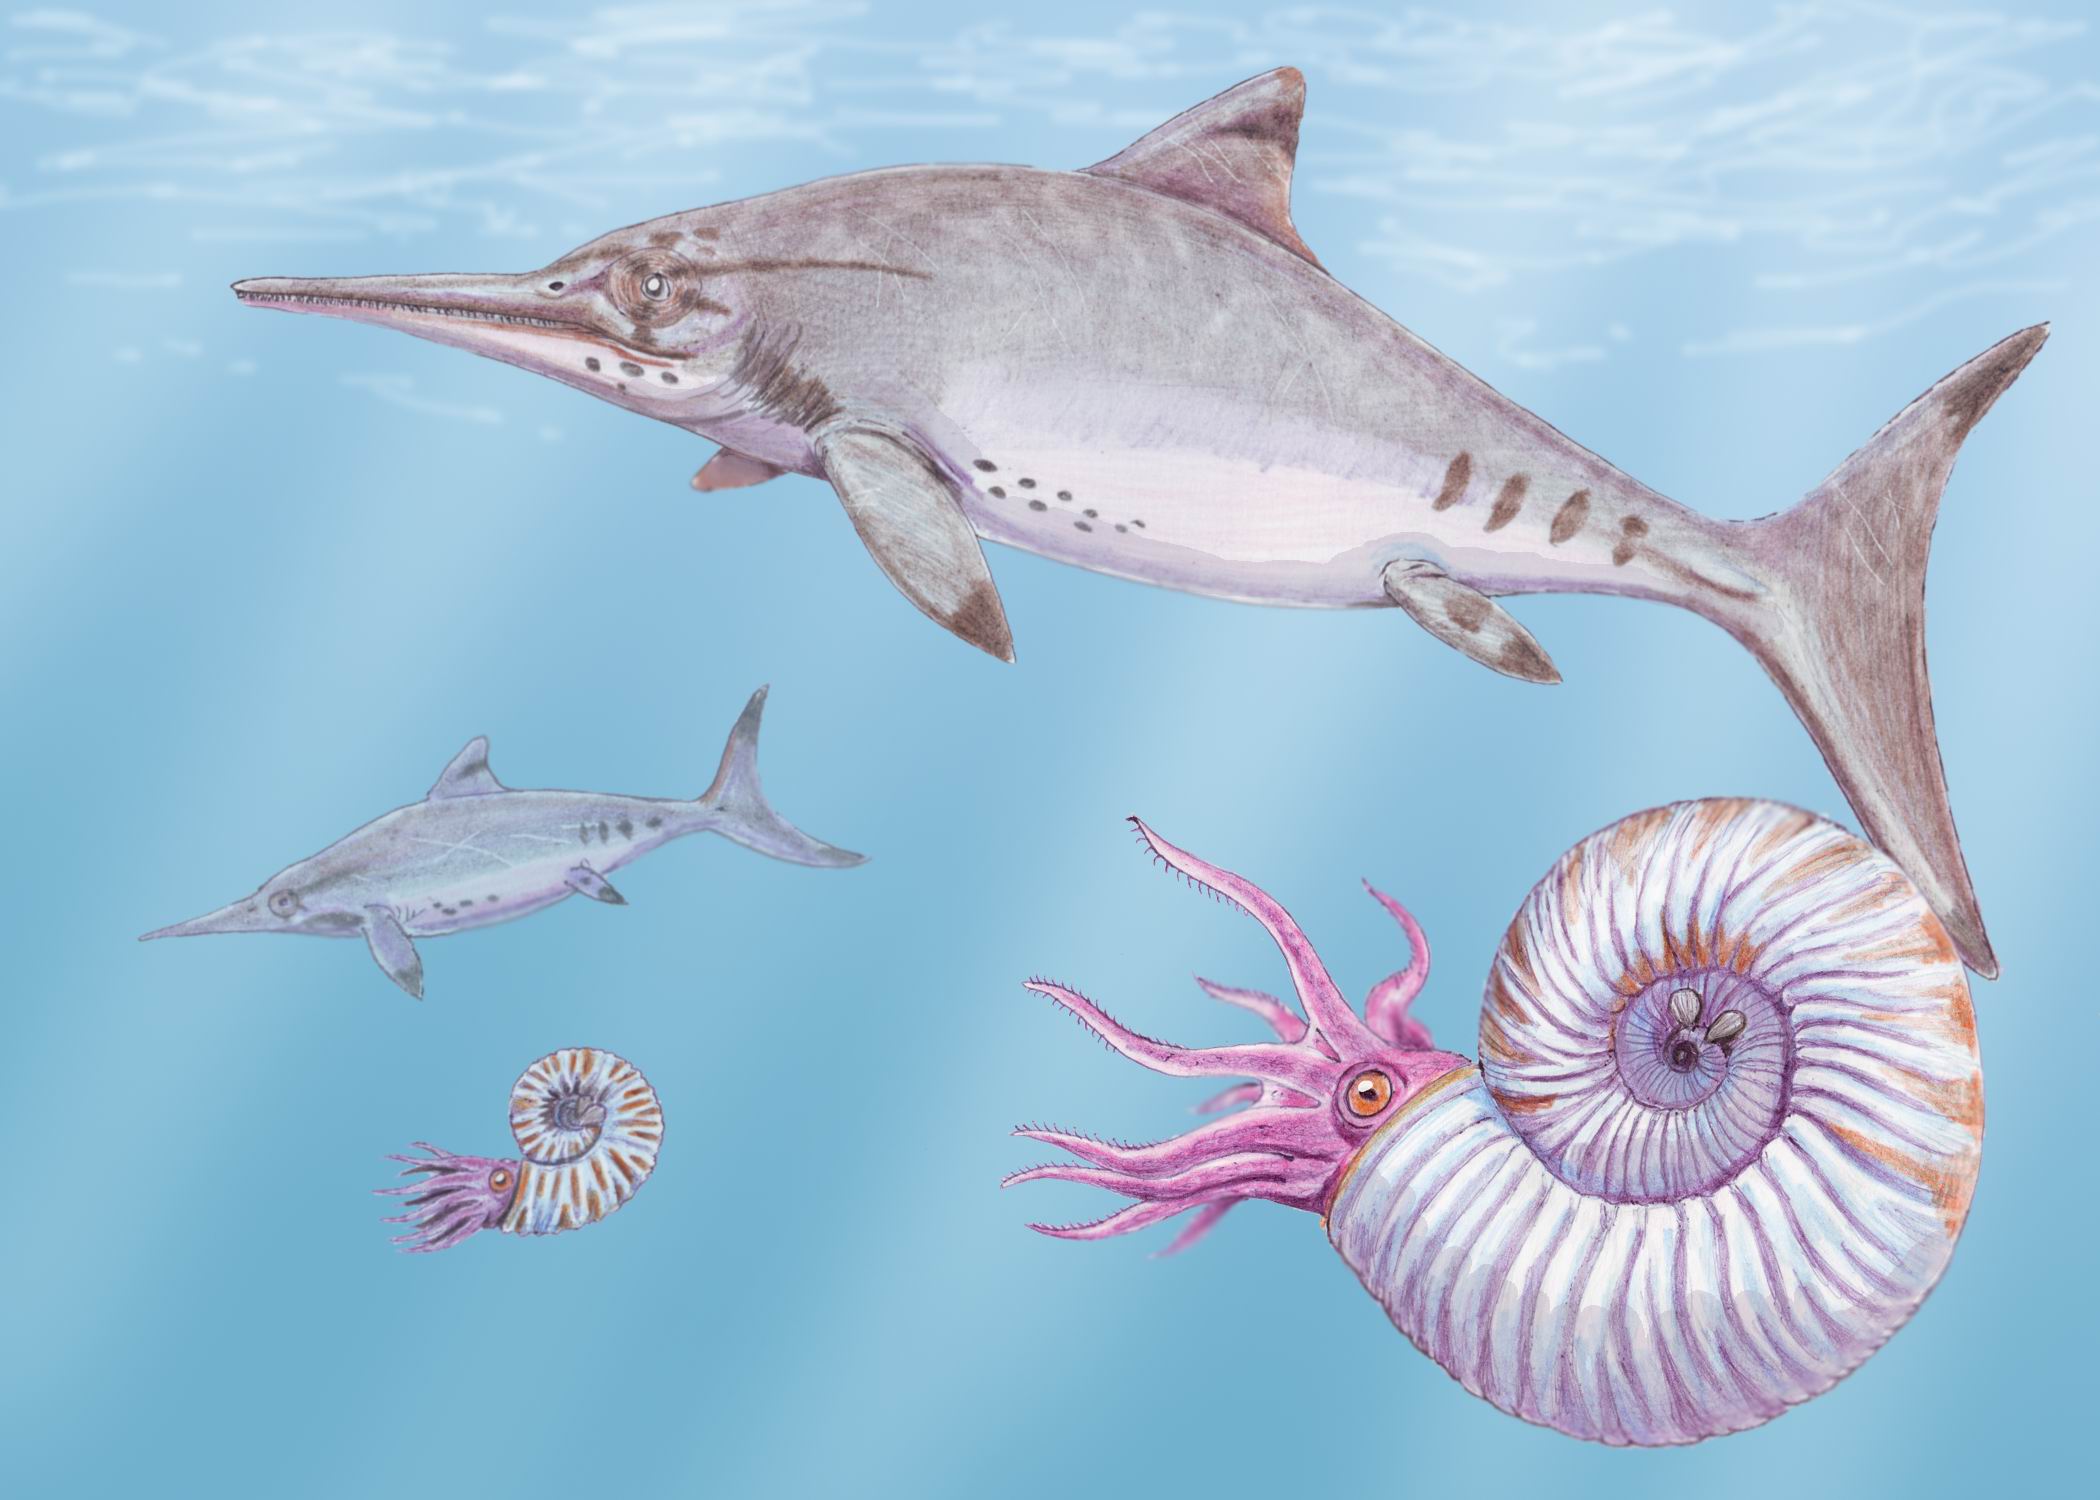 图注:生活在中生代海洋中的鱼龙,图片来自网络